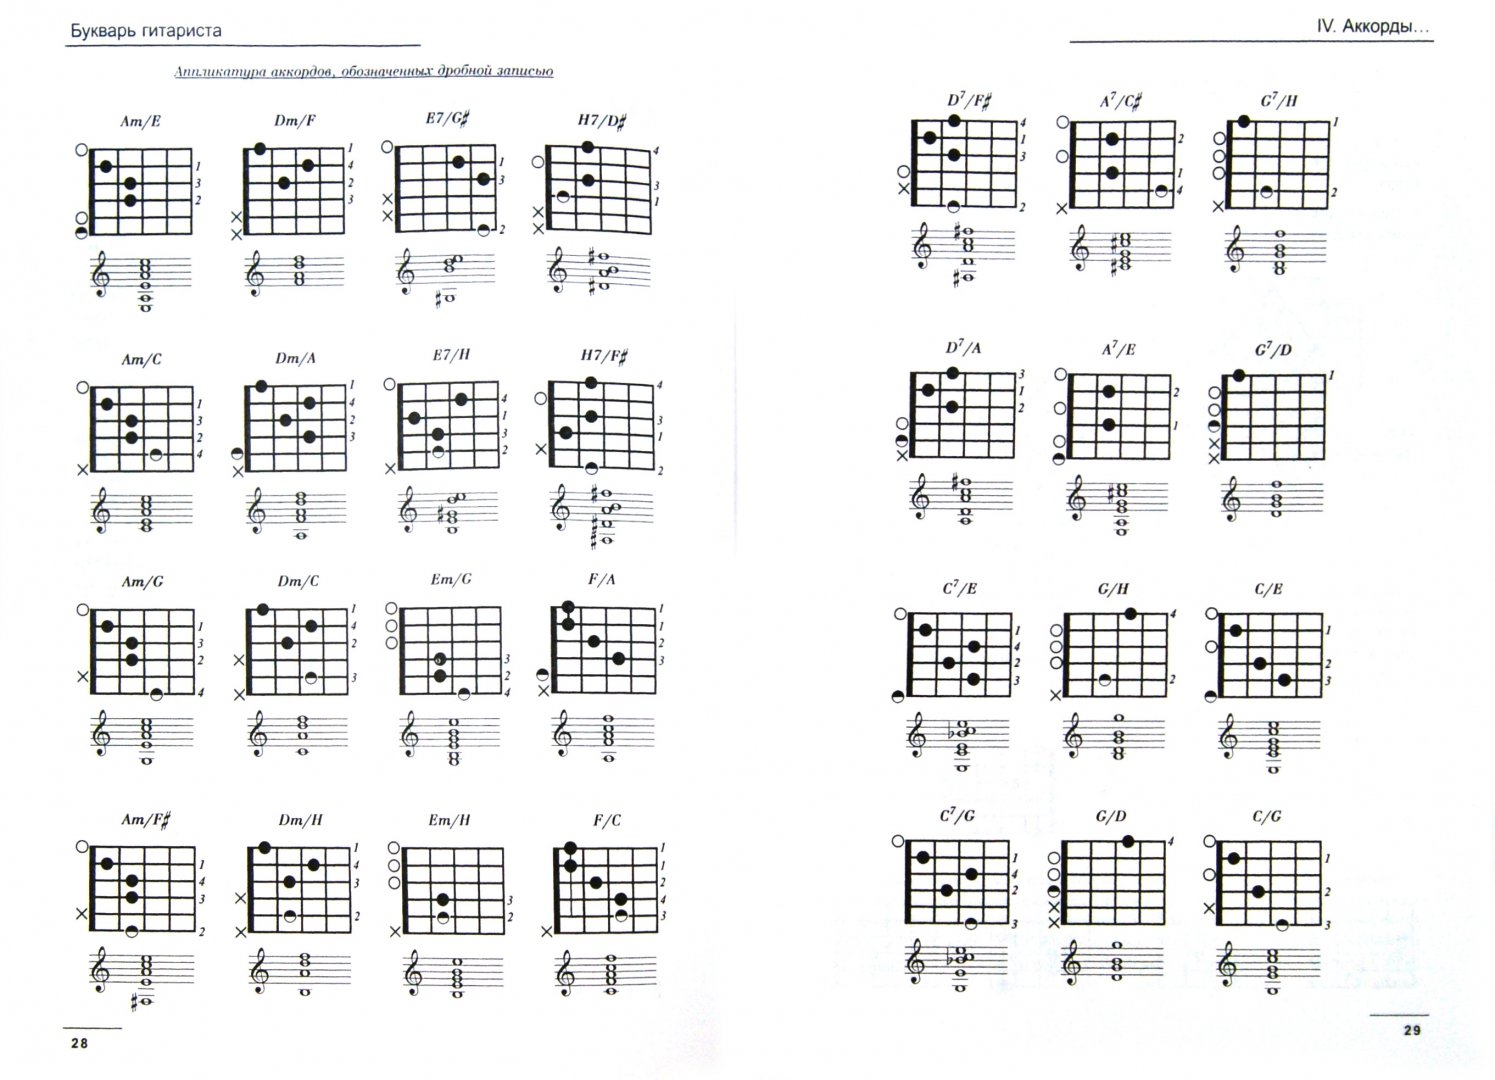 Аккорды для гитары таблица для начинающих. Схемы аккордов. Аккорды для гитары шестиструнной. Аппликатура аккордов для гитары. Таблица аккордов для гитары.